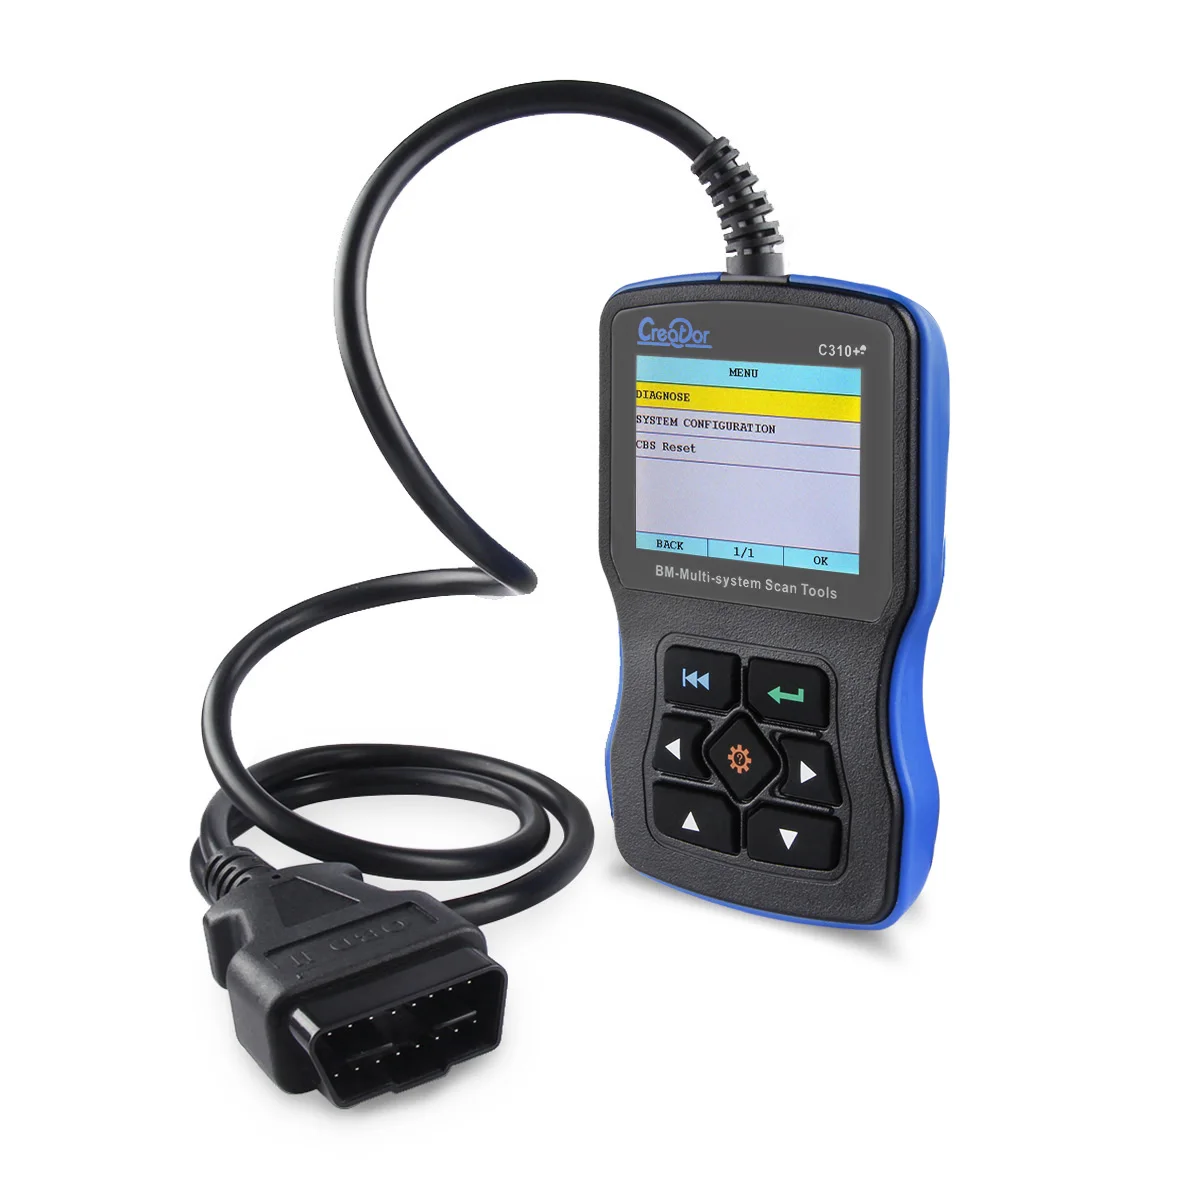 Продвижение полный Системы автомобиля диагностический инструмент для BMW создатель C310+ V7.6 OBD2 сканер Код ошибки чтения для BMW